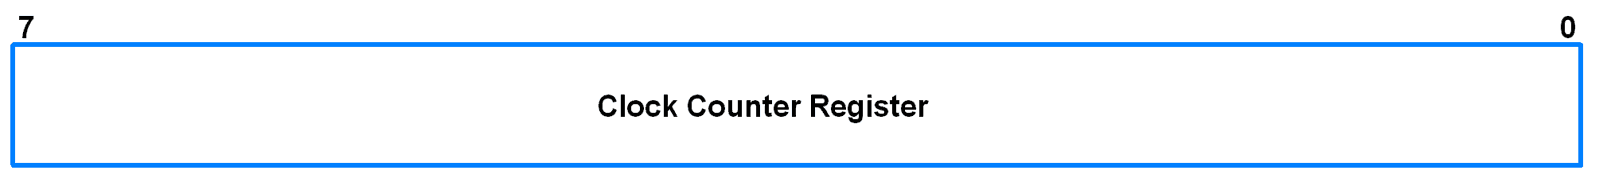 S0SPCCR (SPI0 Clock Counter Register)